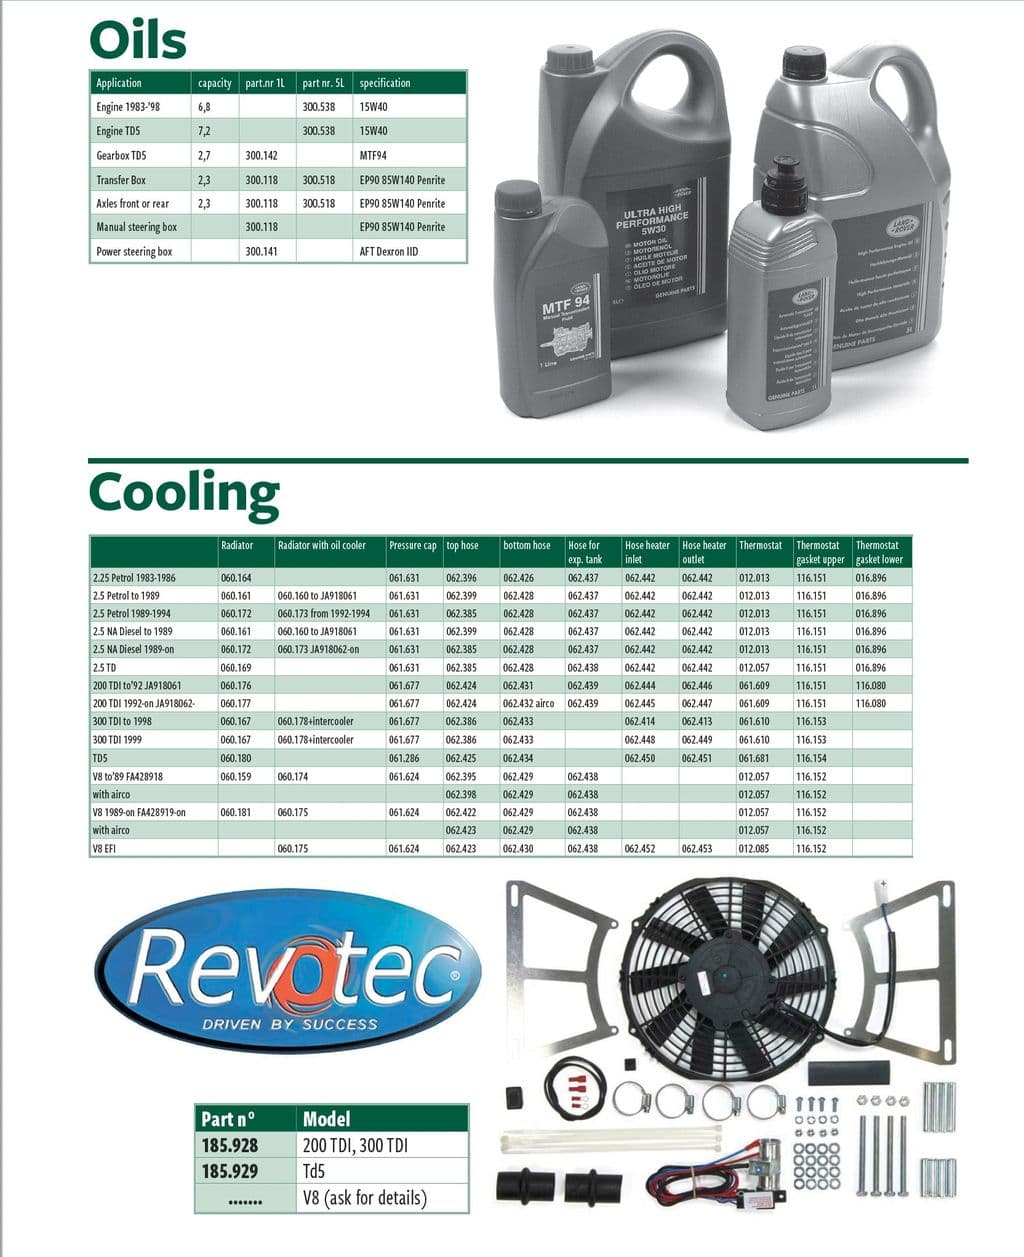 Oils & cooling - Jäähdytysjärjestelmä - Jäähdytysjärjestelmä - Land Rover Defender 90-110 1984-2006 - Oils & cooling - 1